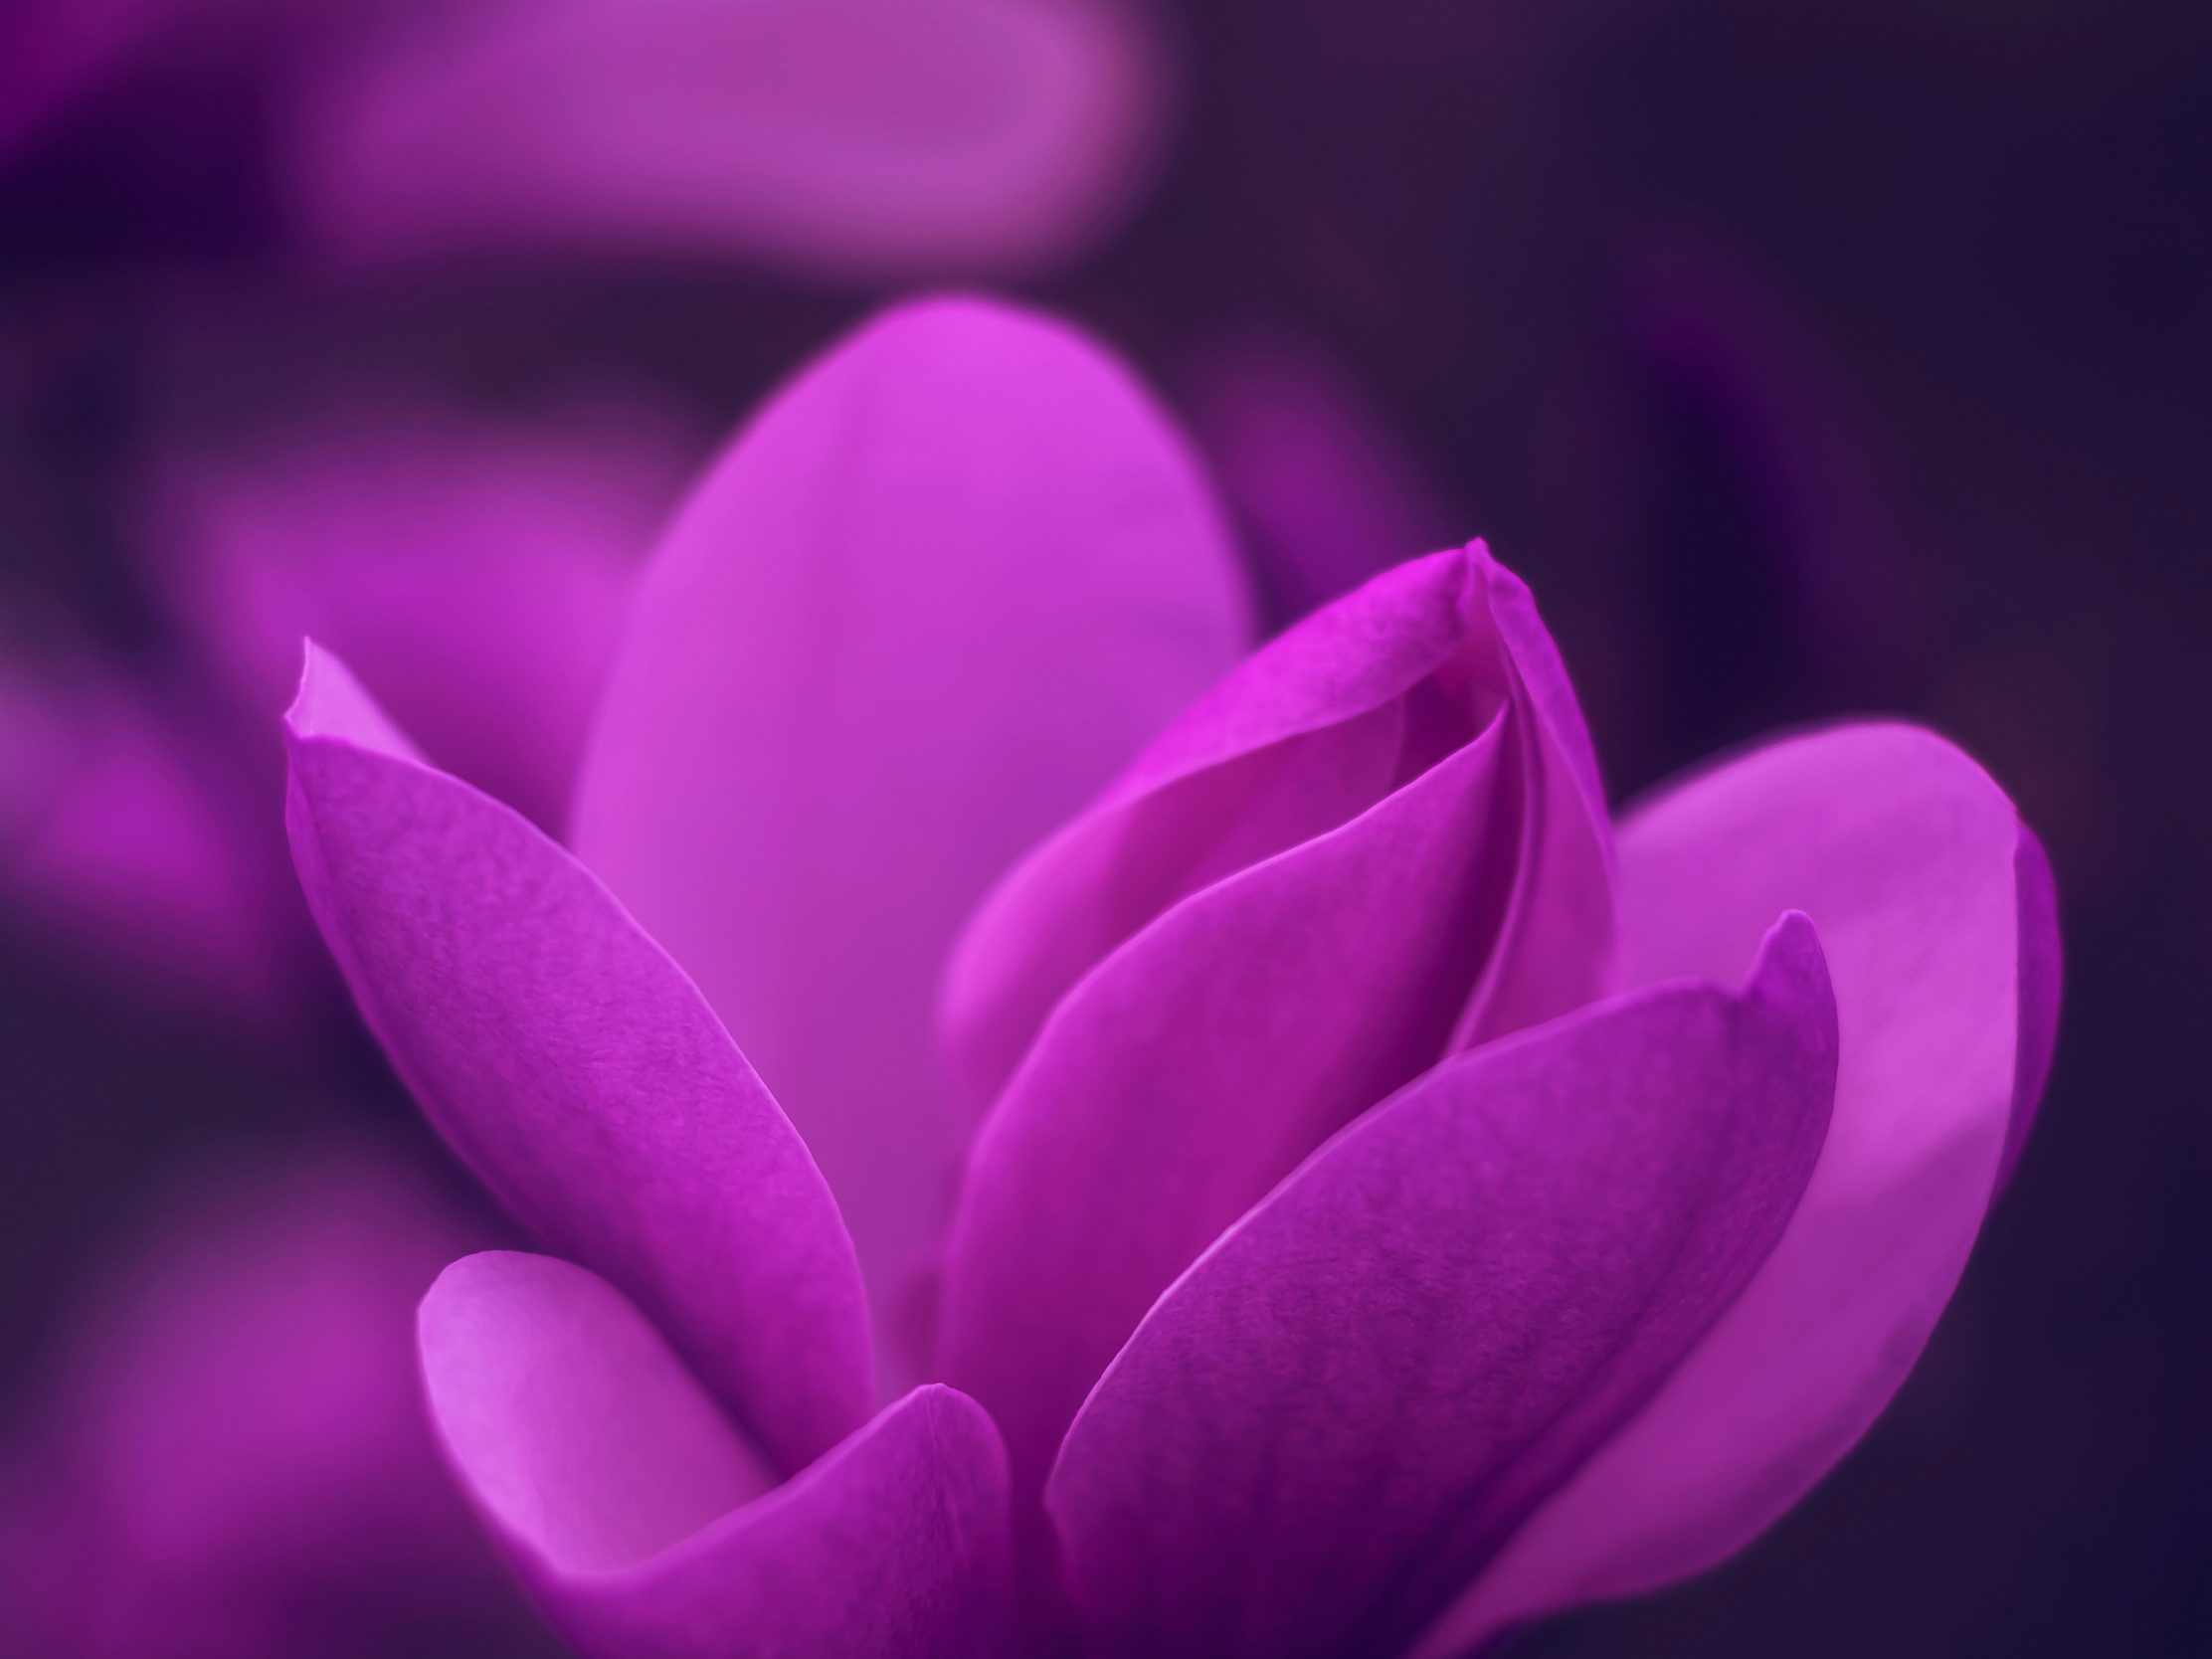 2224x1668 iPad Pro wallpapers Purple Bloom Blossom Petaled Flower iPad Wallpaper 2224x1668 pixels resolution